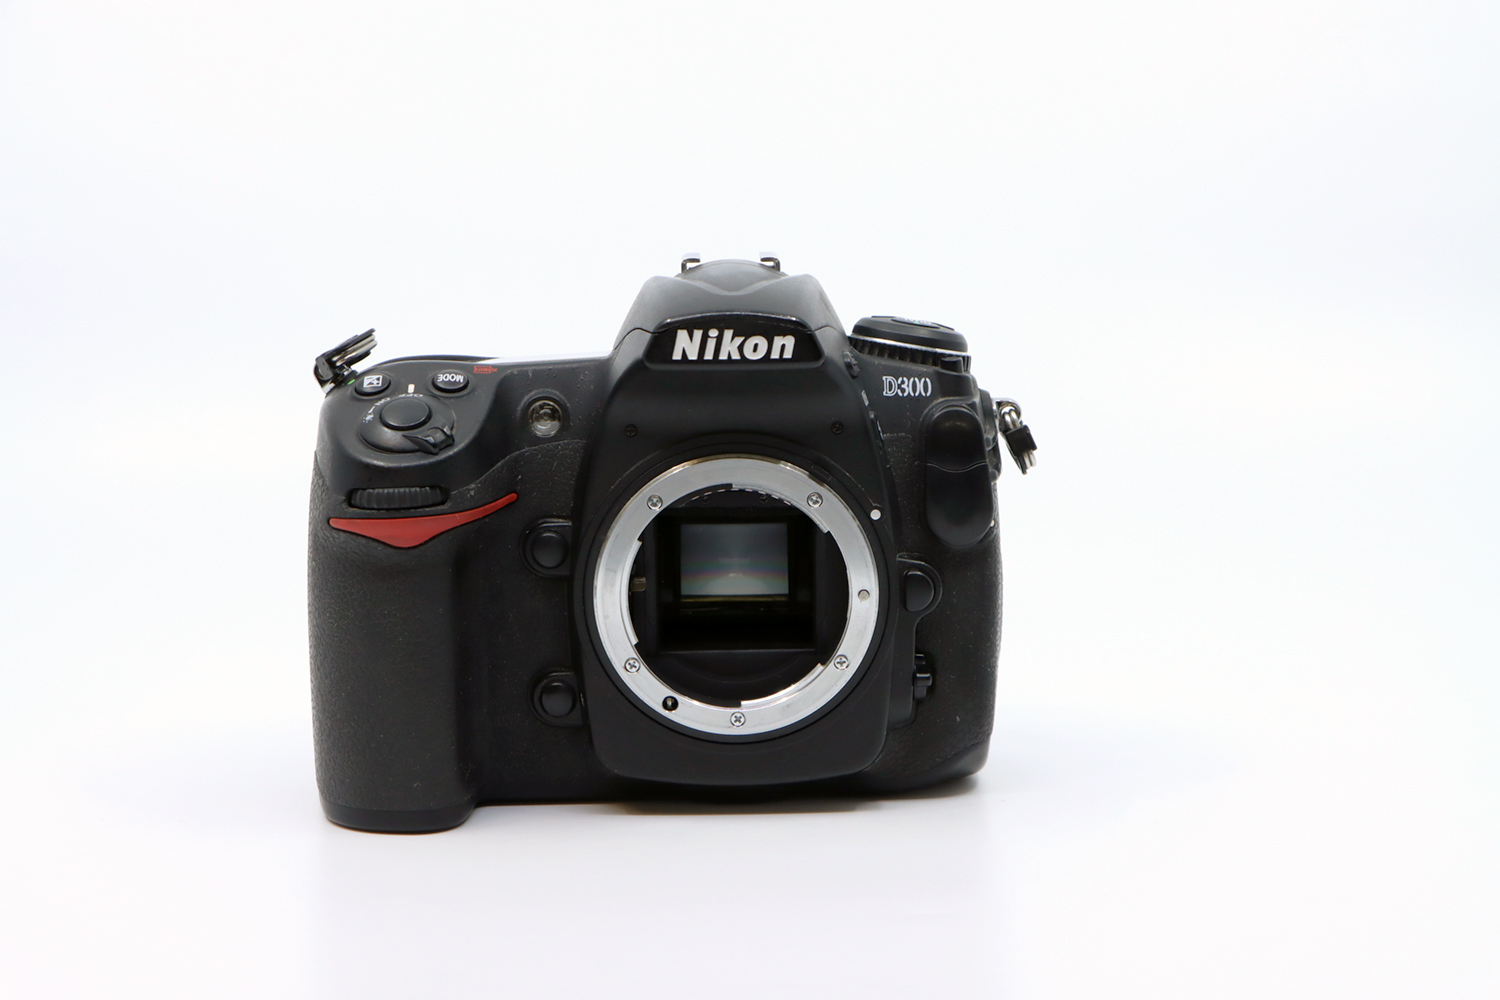 Nikon D300 + Sigma 18-200mm | IMG_6162.JPG